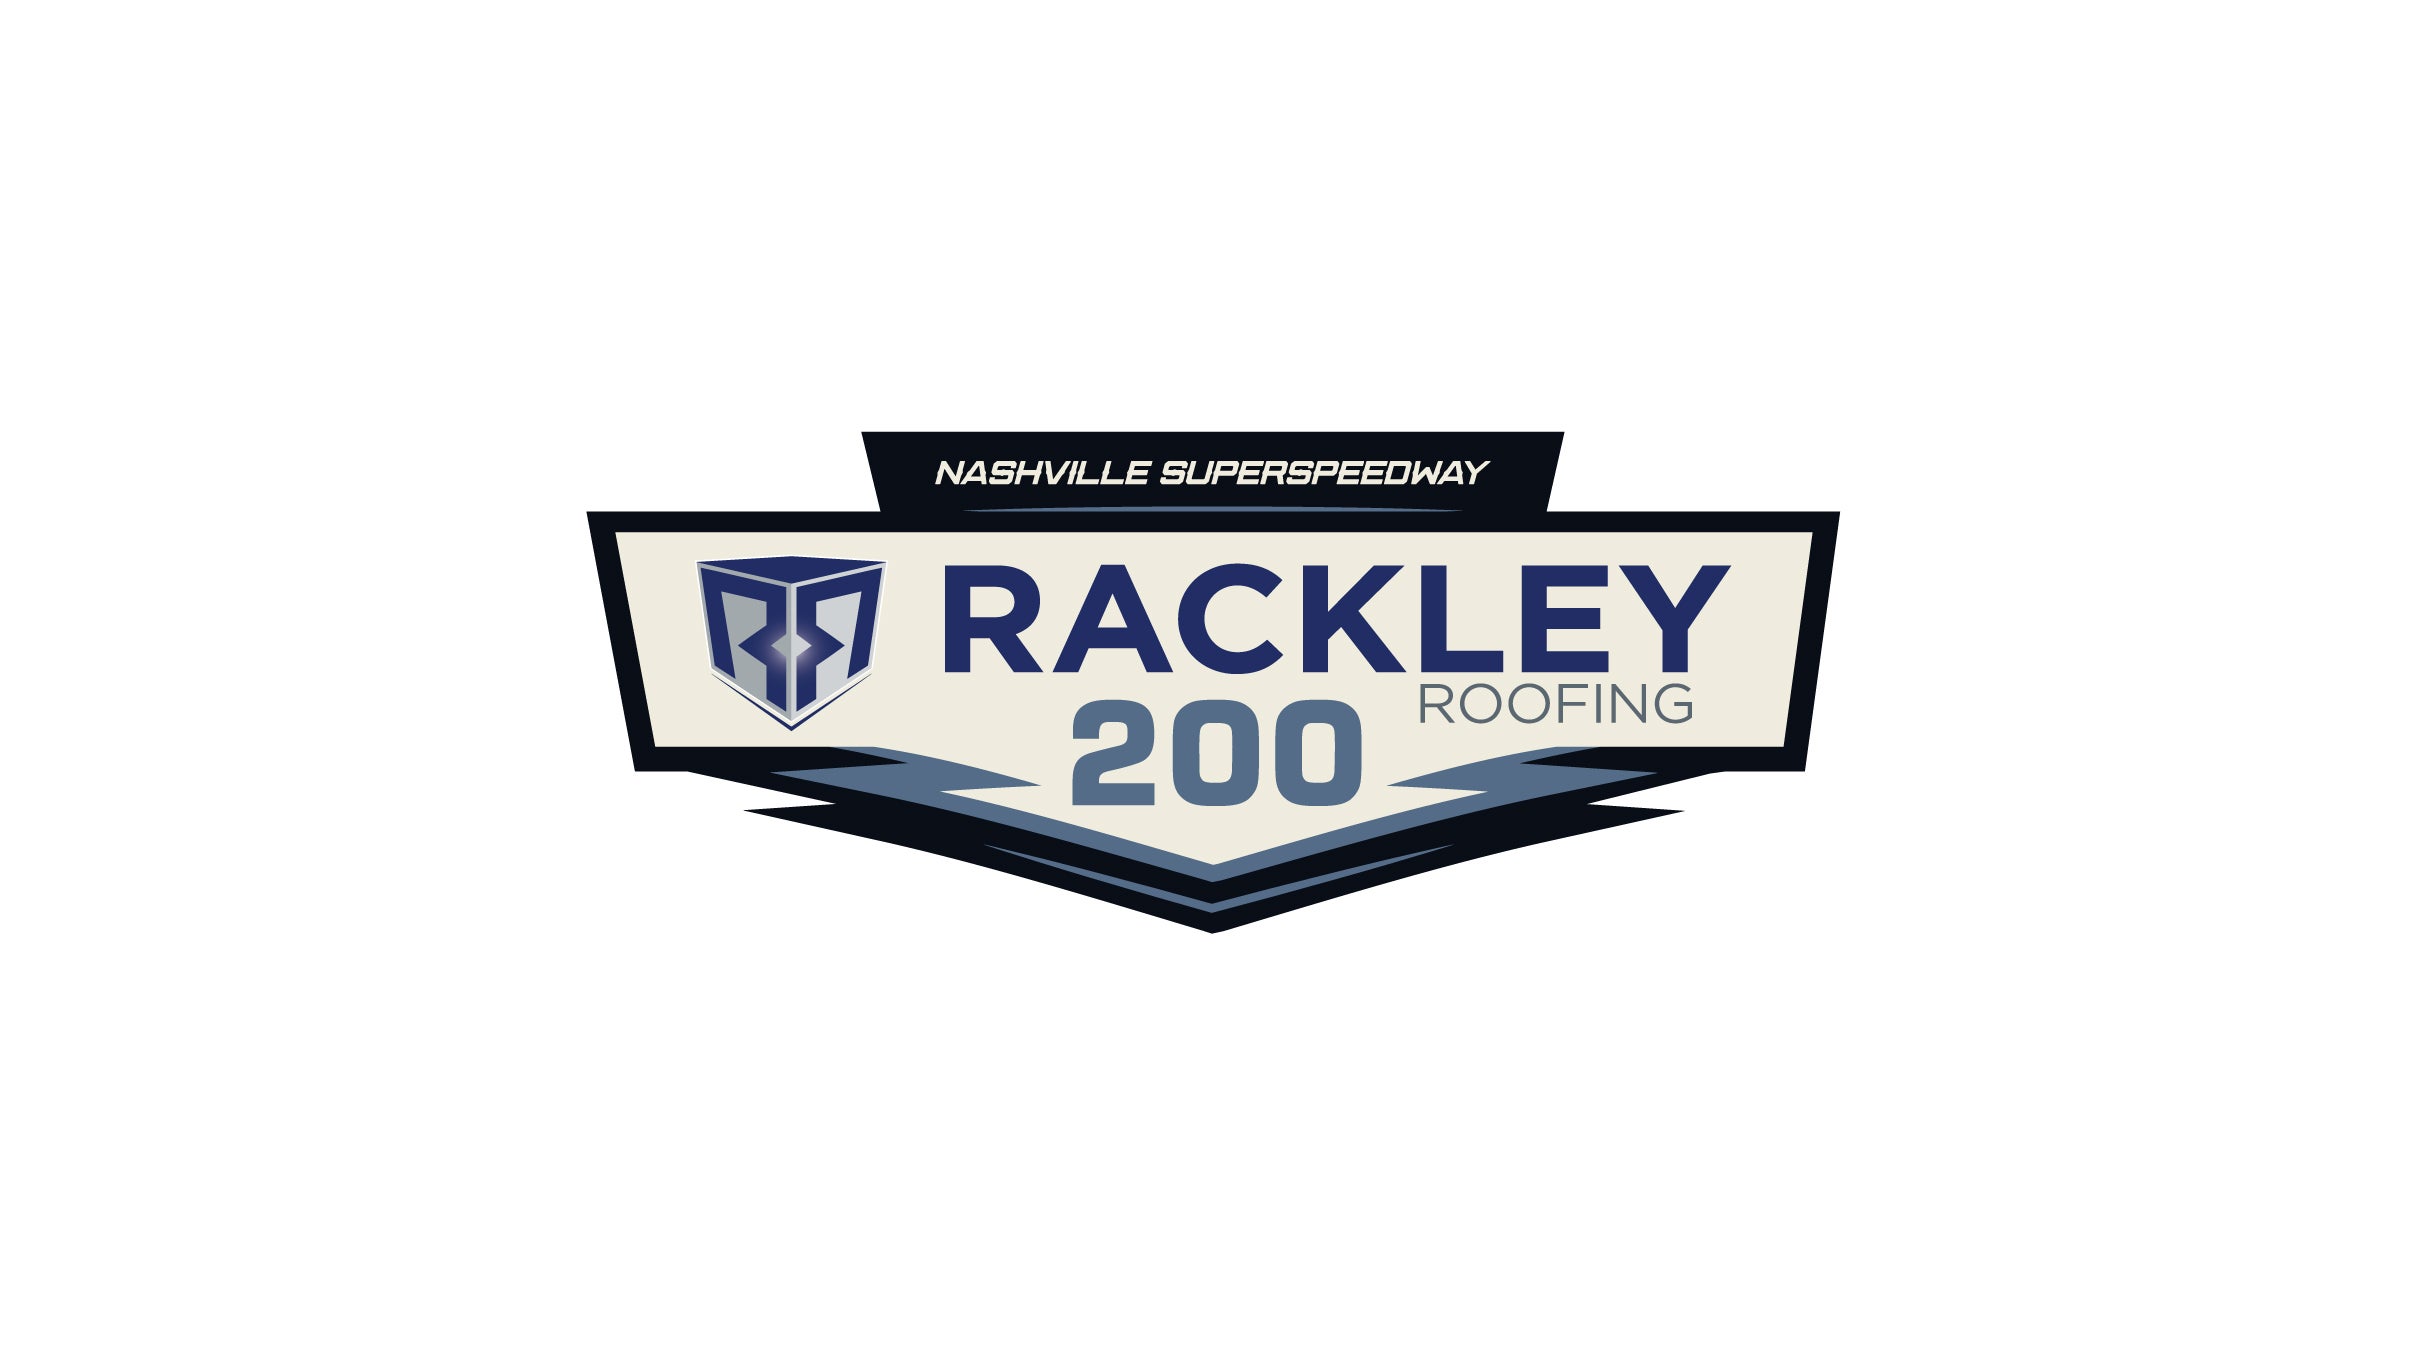 Rackley Roofing 200 at Nashville Superspeedway